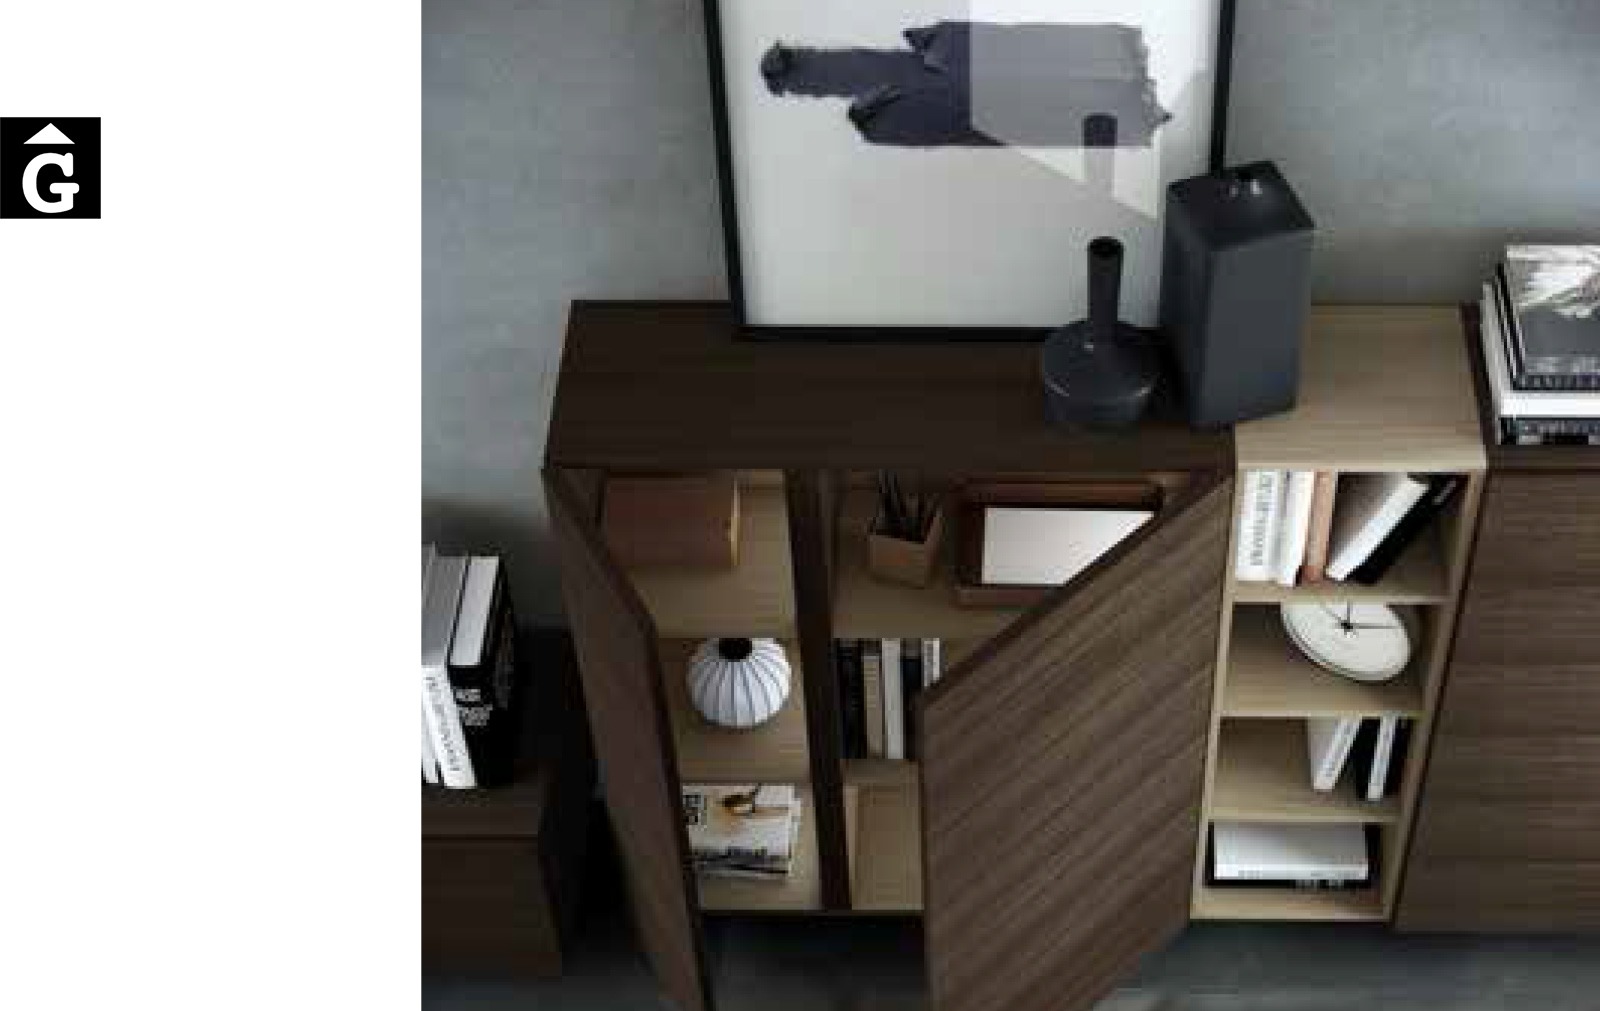 16 1 Area mobles Ciurans per mobles Gifreu programa modular disseny atemporal realitzat amb materials i ferratges de qualitat estil modern minimal